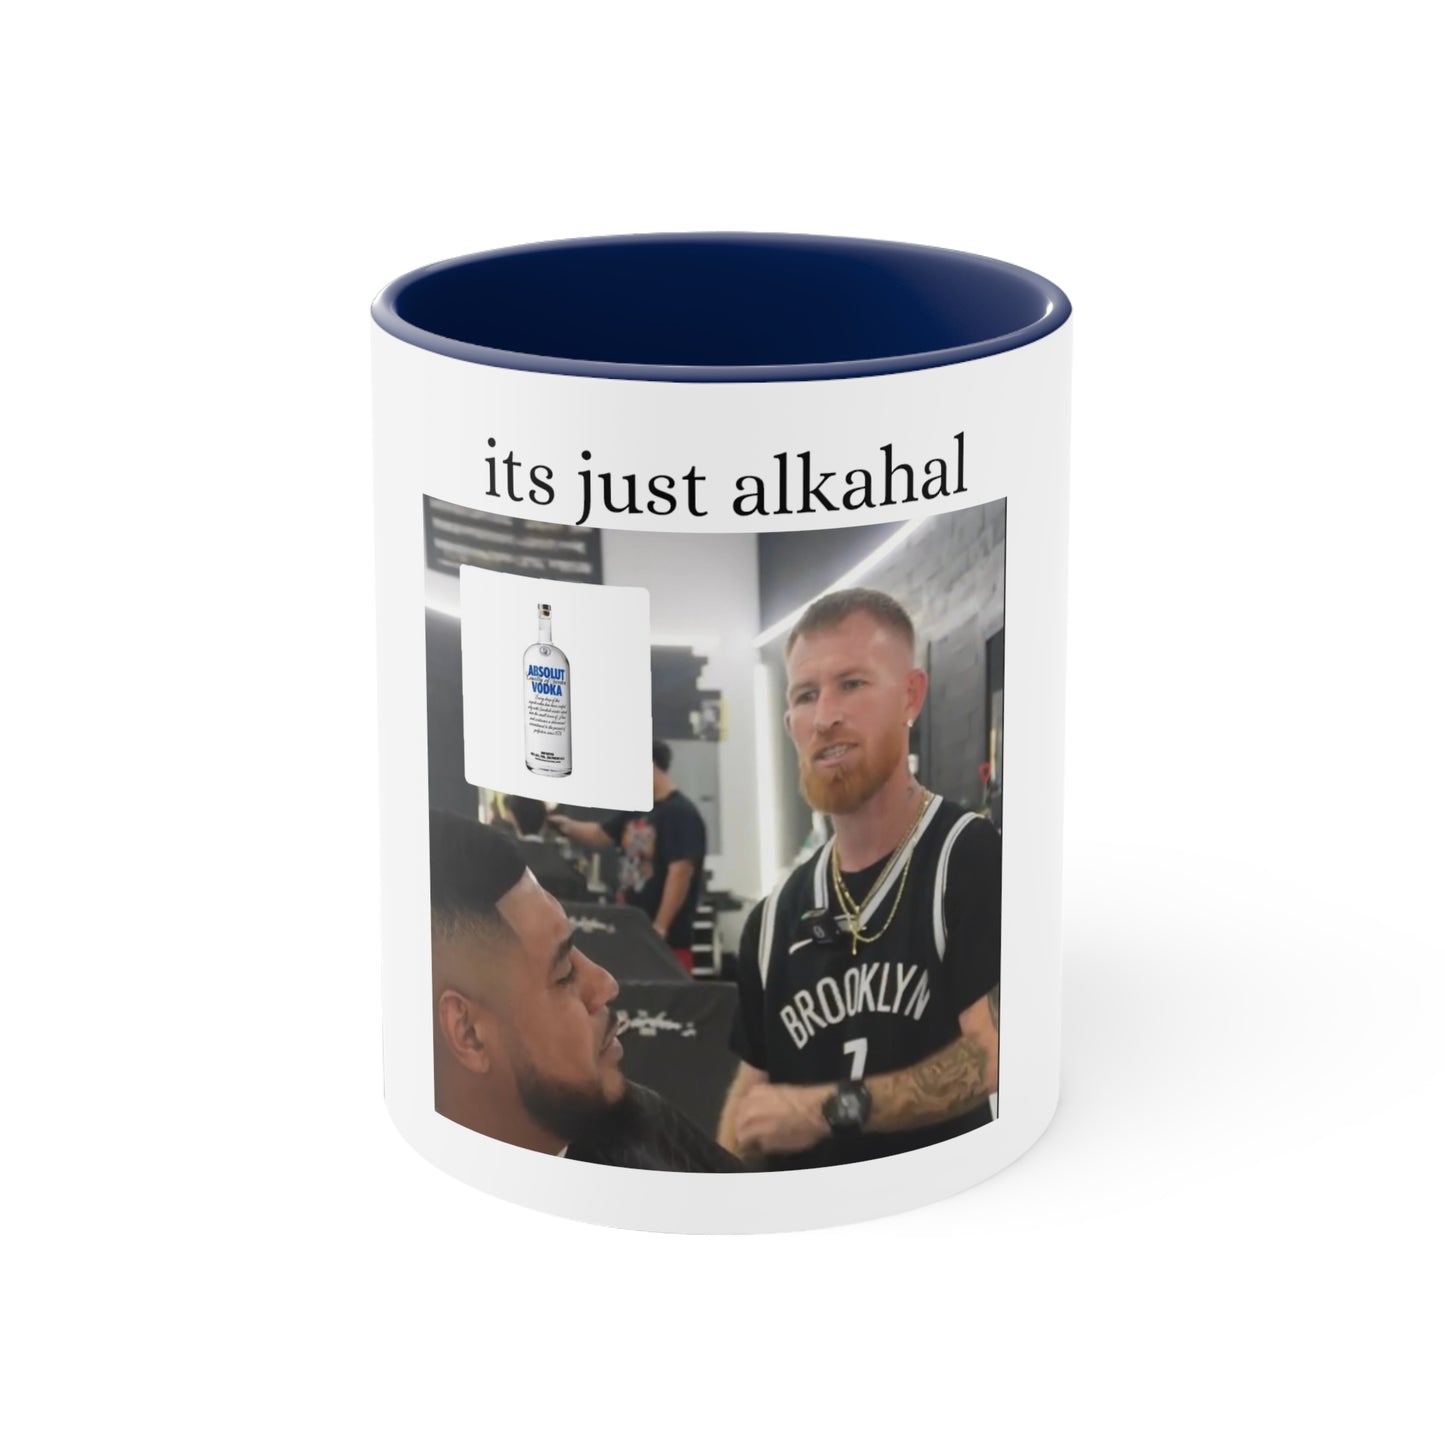 Its just alkahal mug